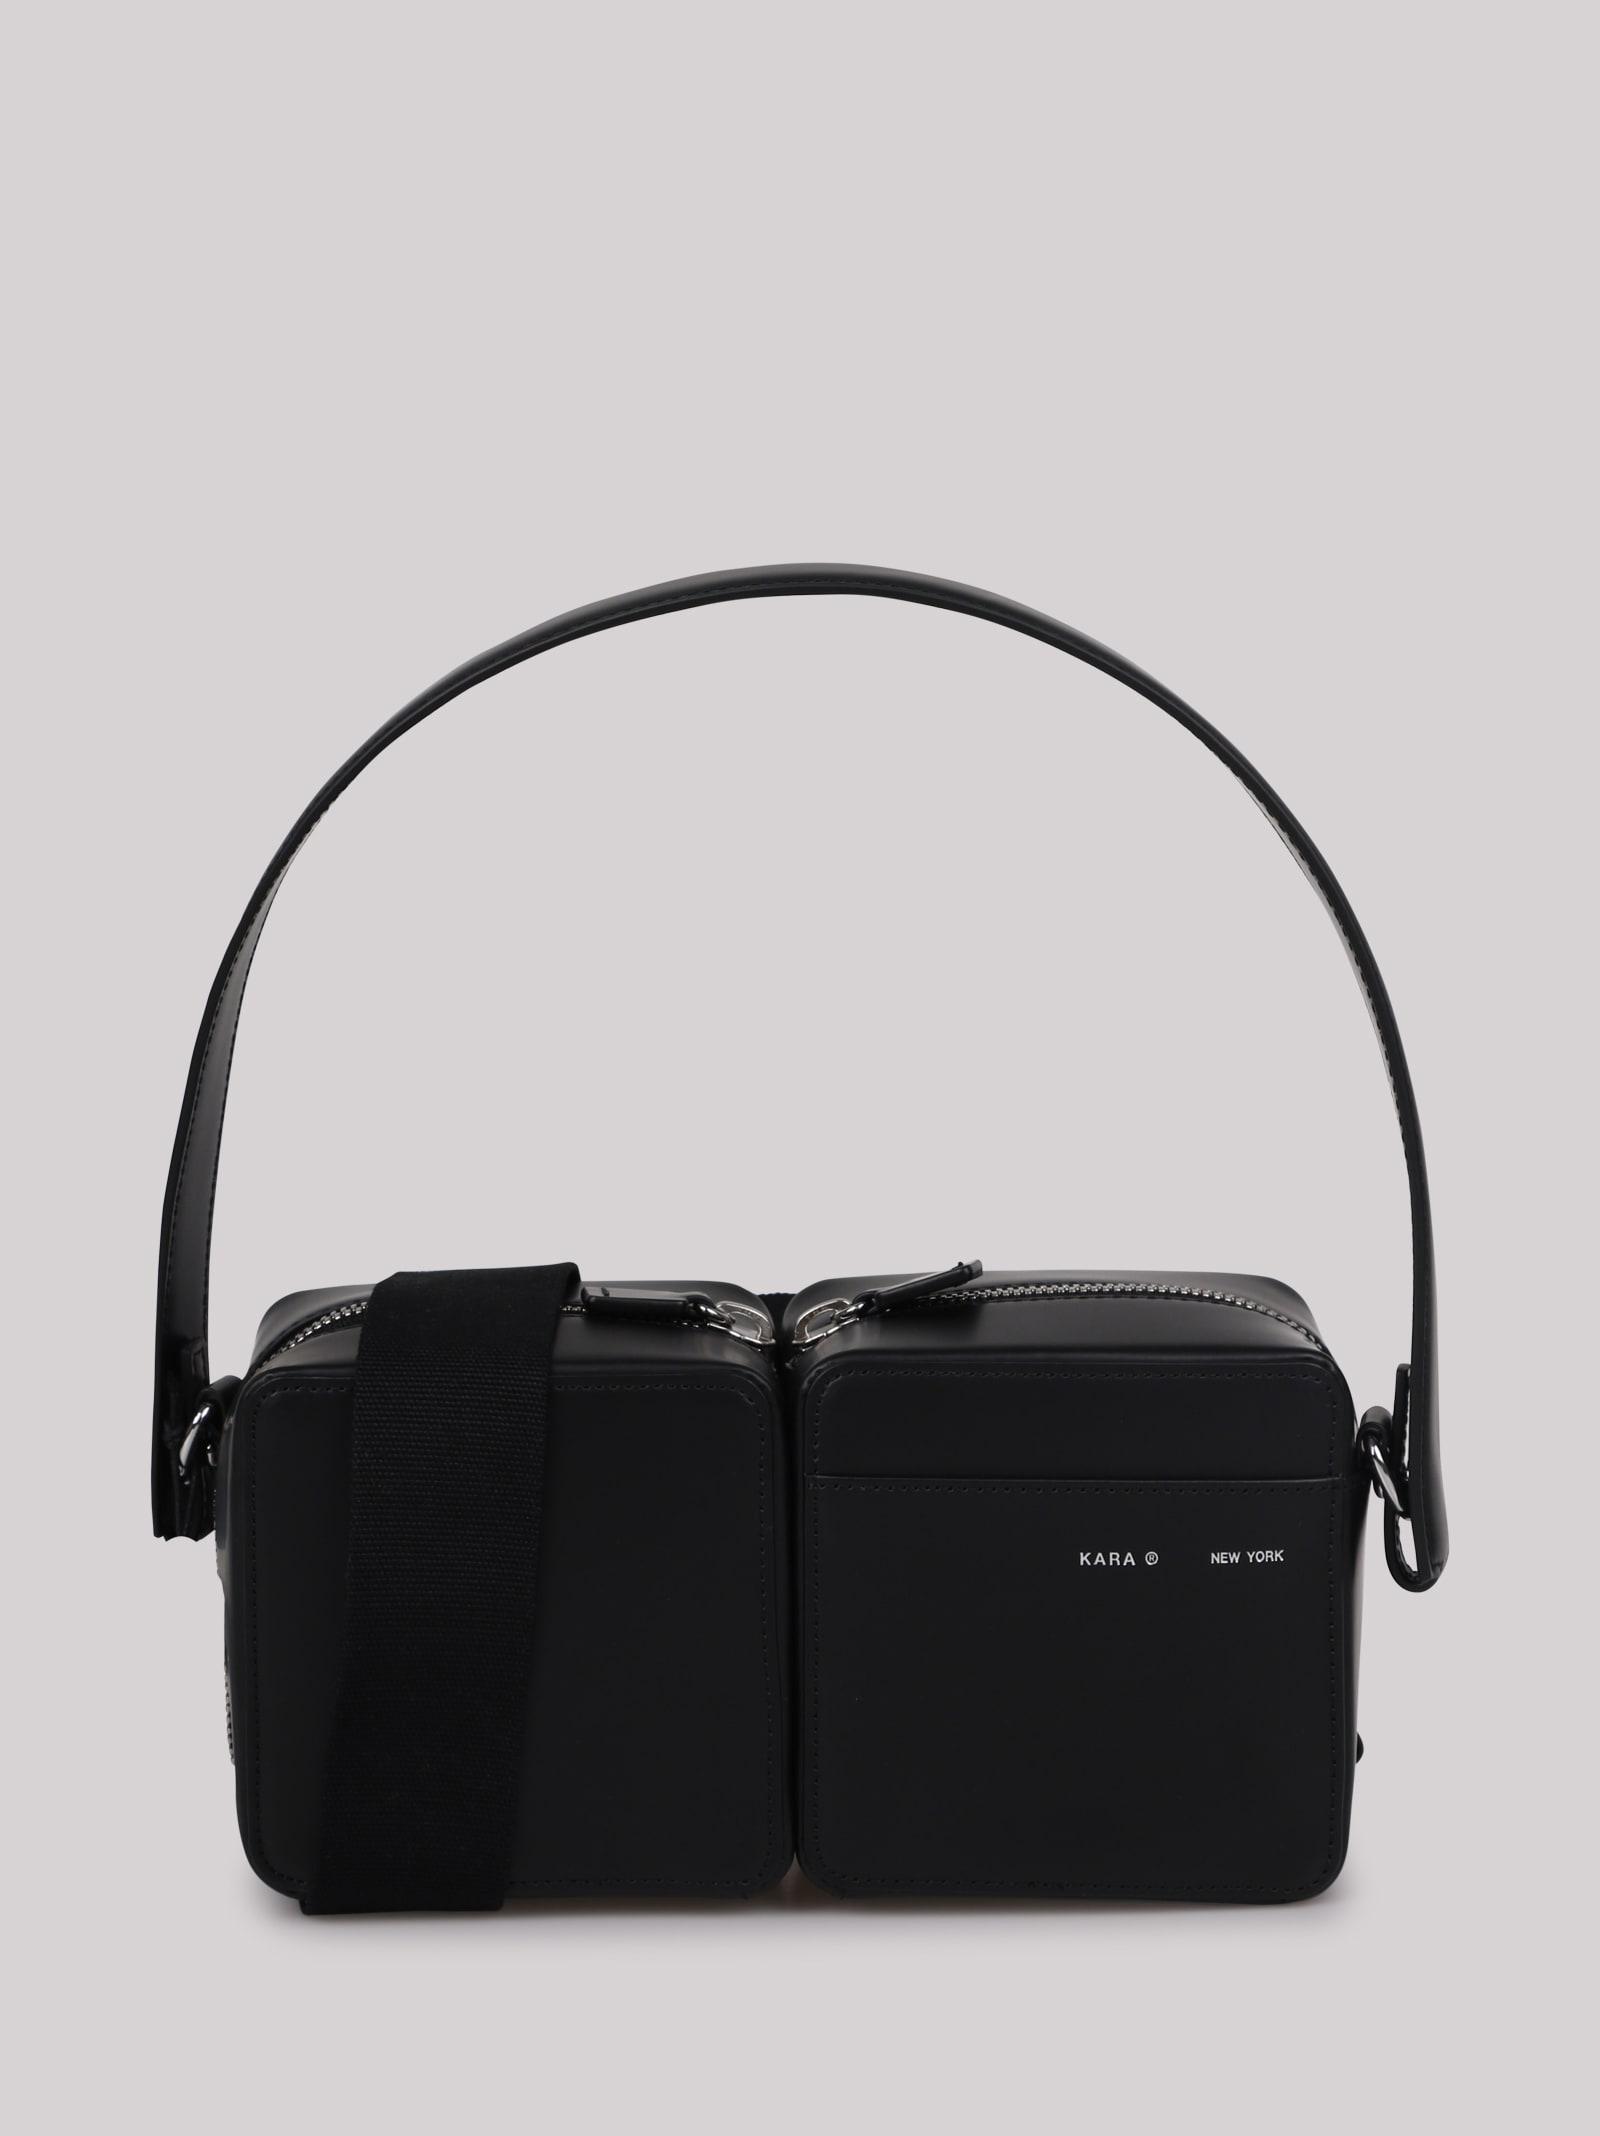 Kara Leather Shoulder Bag in Black